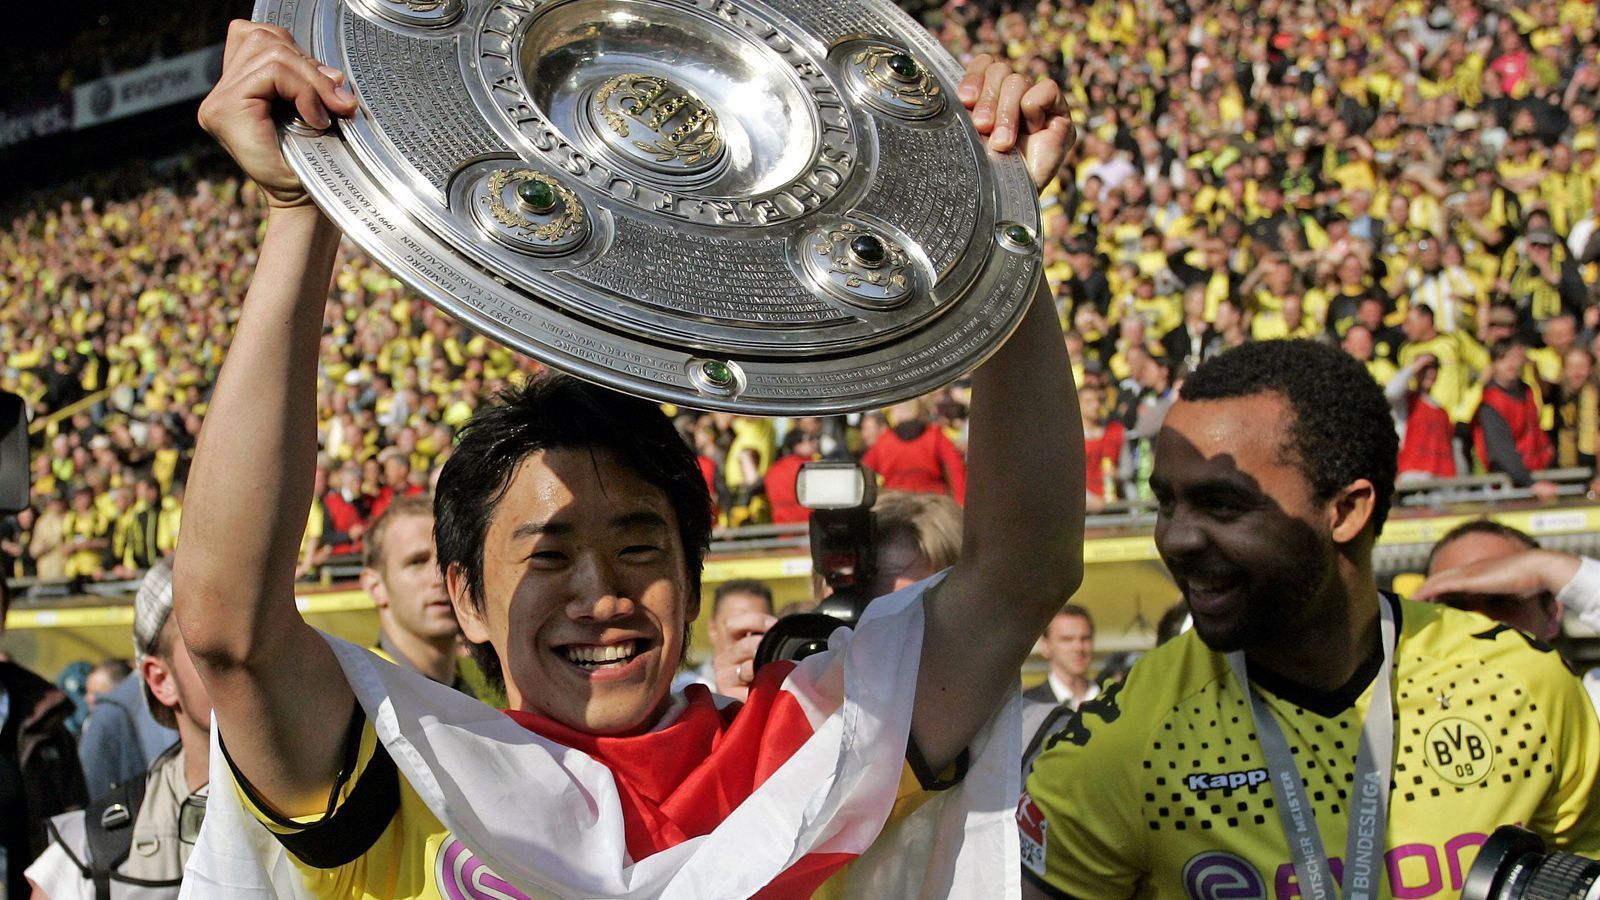 
                <strong>Shinji Kagawa</strong><br>
                Neben Götze war definitiv der Japaner Shinji Kagawa Dortmunds Shootingstar in der Saison 2010/11. Der Offensivmann kam im Sommer 2010 als No-Name aus der Heimat zum BVB und verzückte die Bundesliga auf Anhieb mit acht Toren in der ersten Saison. Nach der Titelverteidigung wechselte Kagawa 2012 zu Manchester United, konnte sich dort aber nicht so recht behaupten. Er kehrte daher schon zwei Jahre später zurück nach Dortmund, aber hatte auch dort Probleme, an die Leistungen seiner ersten BVB-Ära anzuknüpfen. Mittlerweile spielt der 32-Jährige in Griechenland bei PAOK Saloniki.
              